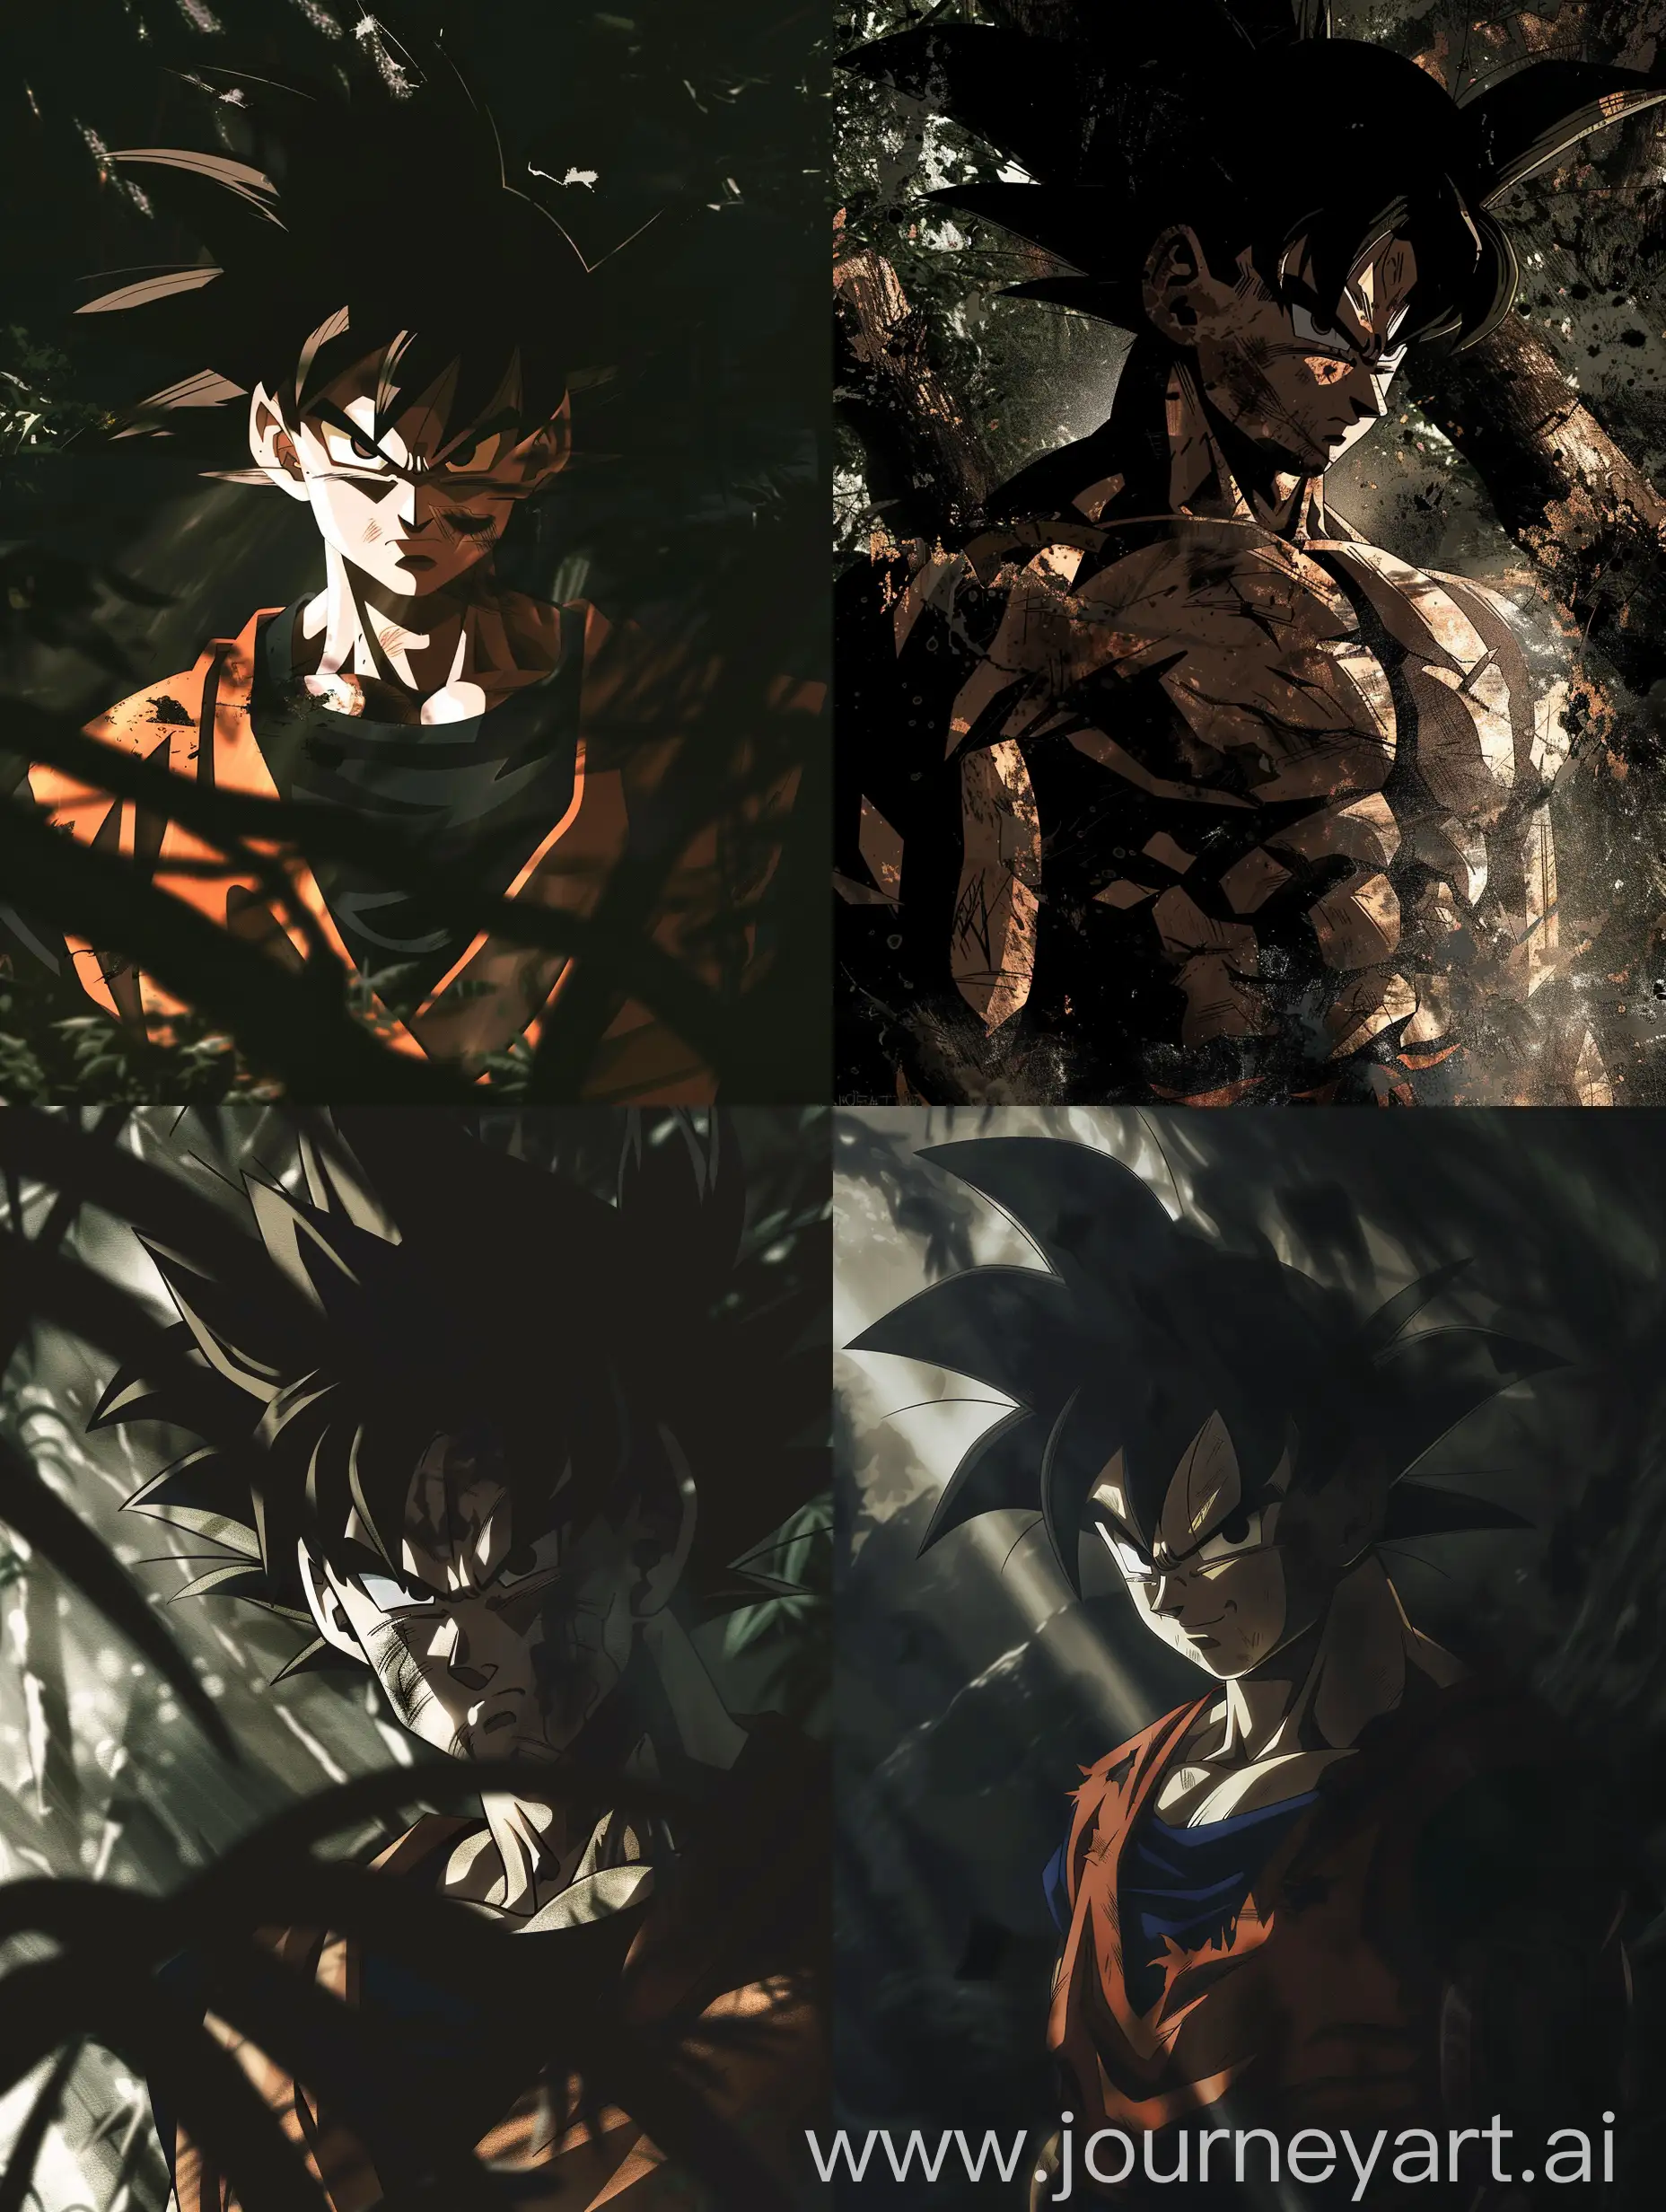 Intense-Goku-Portrait-Determined-Warrior-Amidst-Shadows